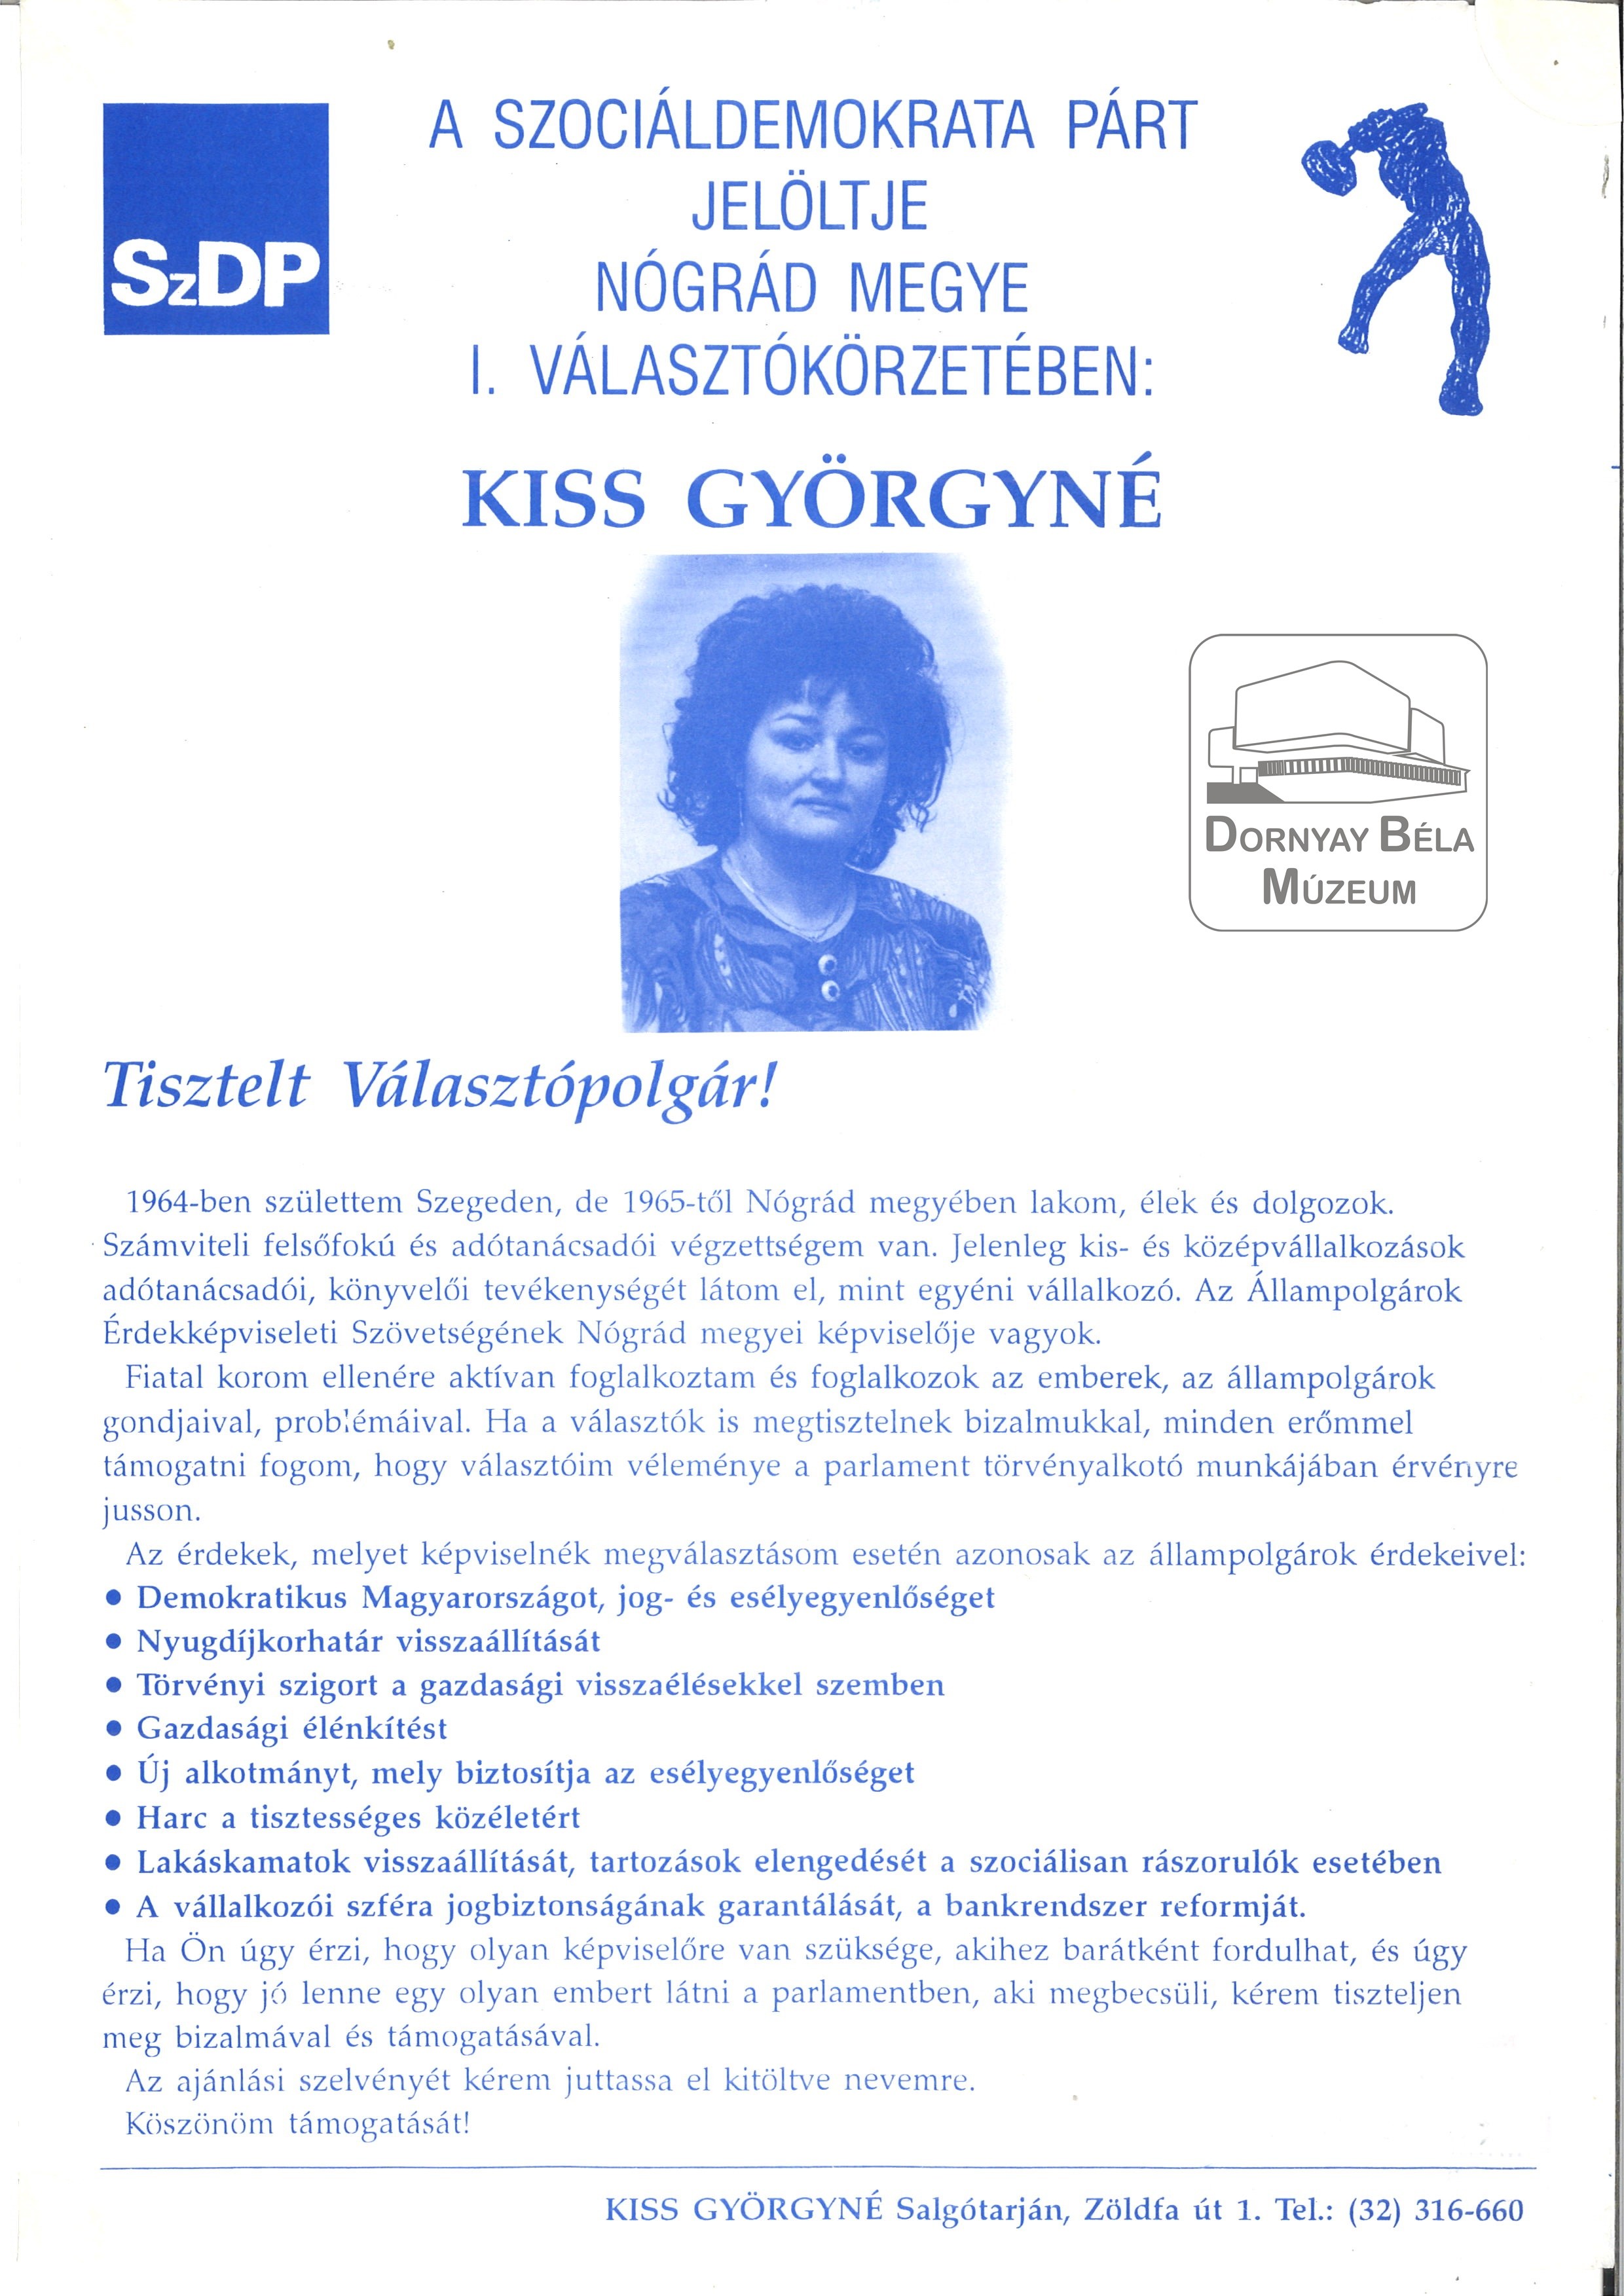 Kiss Györgyné a Szociáldemokrata Párt jelöltje Nógrád megye 1.sz. Választókerületében (Dornyay Béla Múzeum, Salgótarján CC BY-NC-SA)